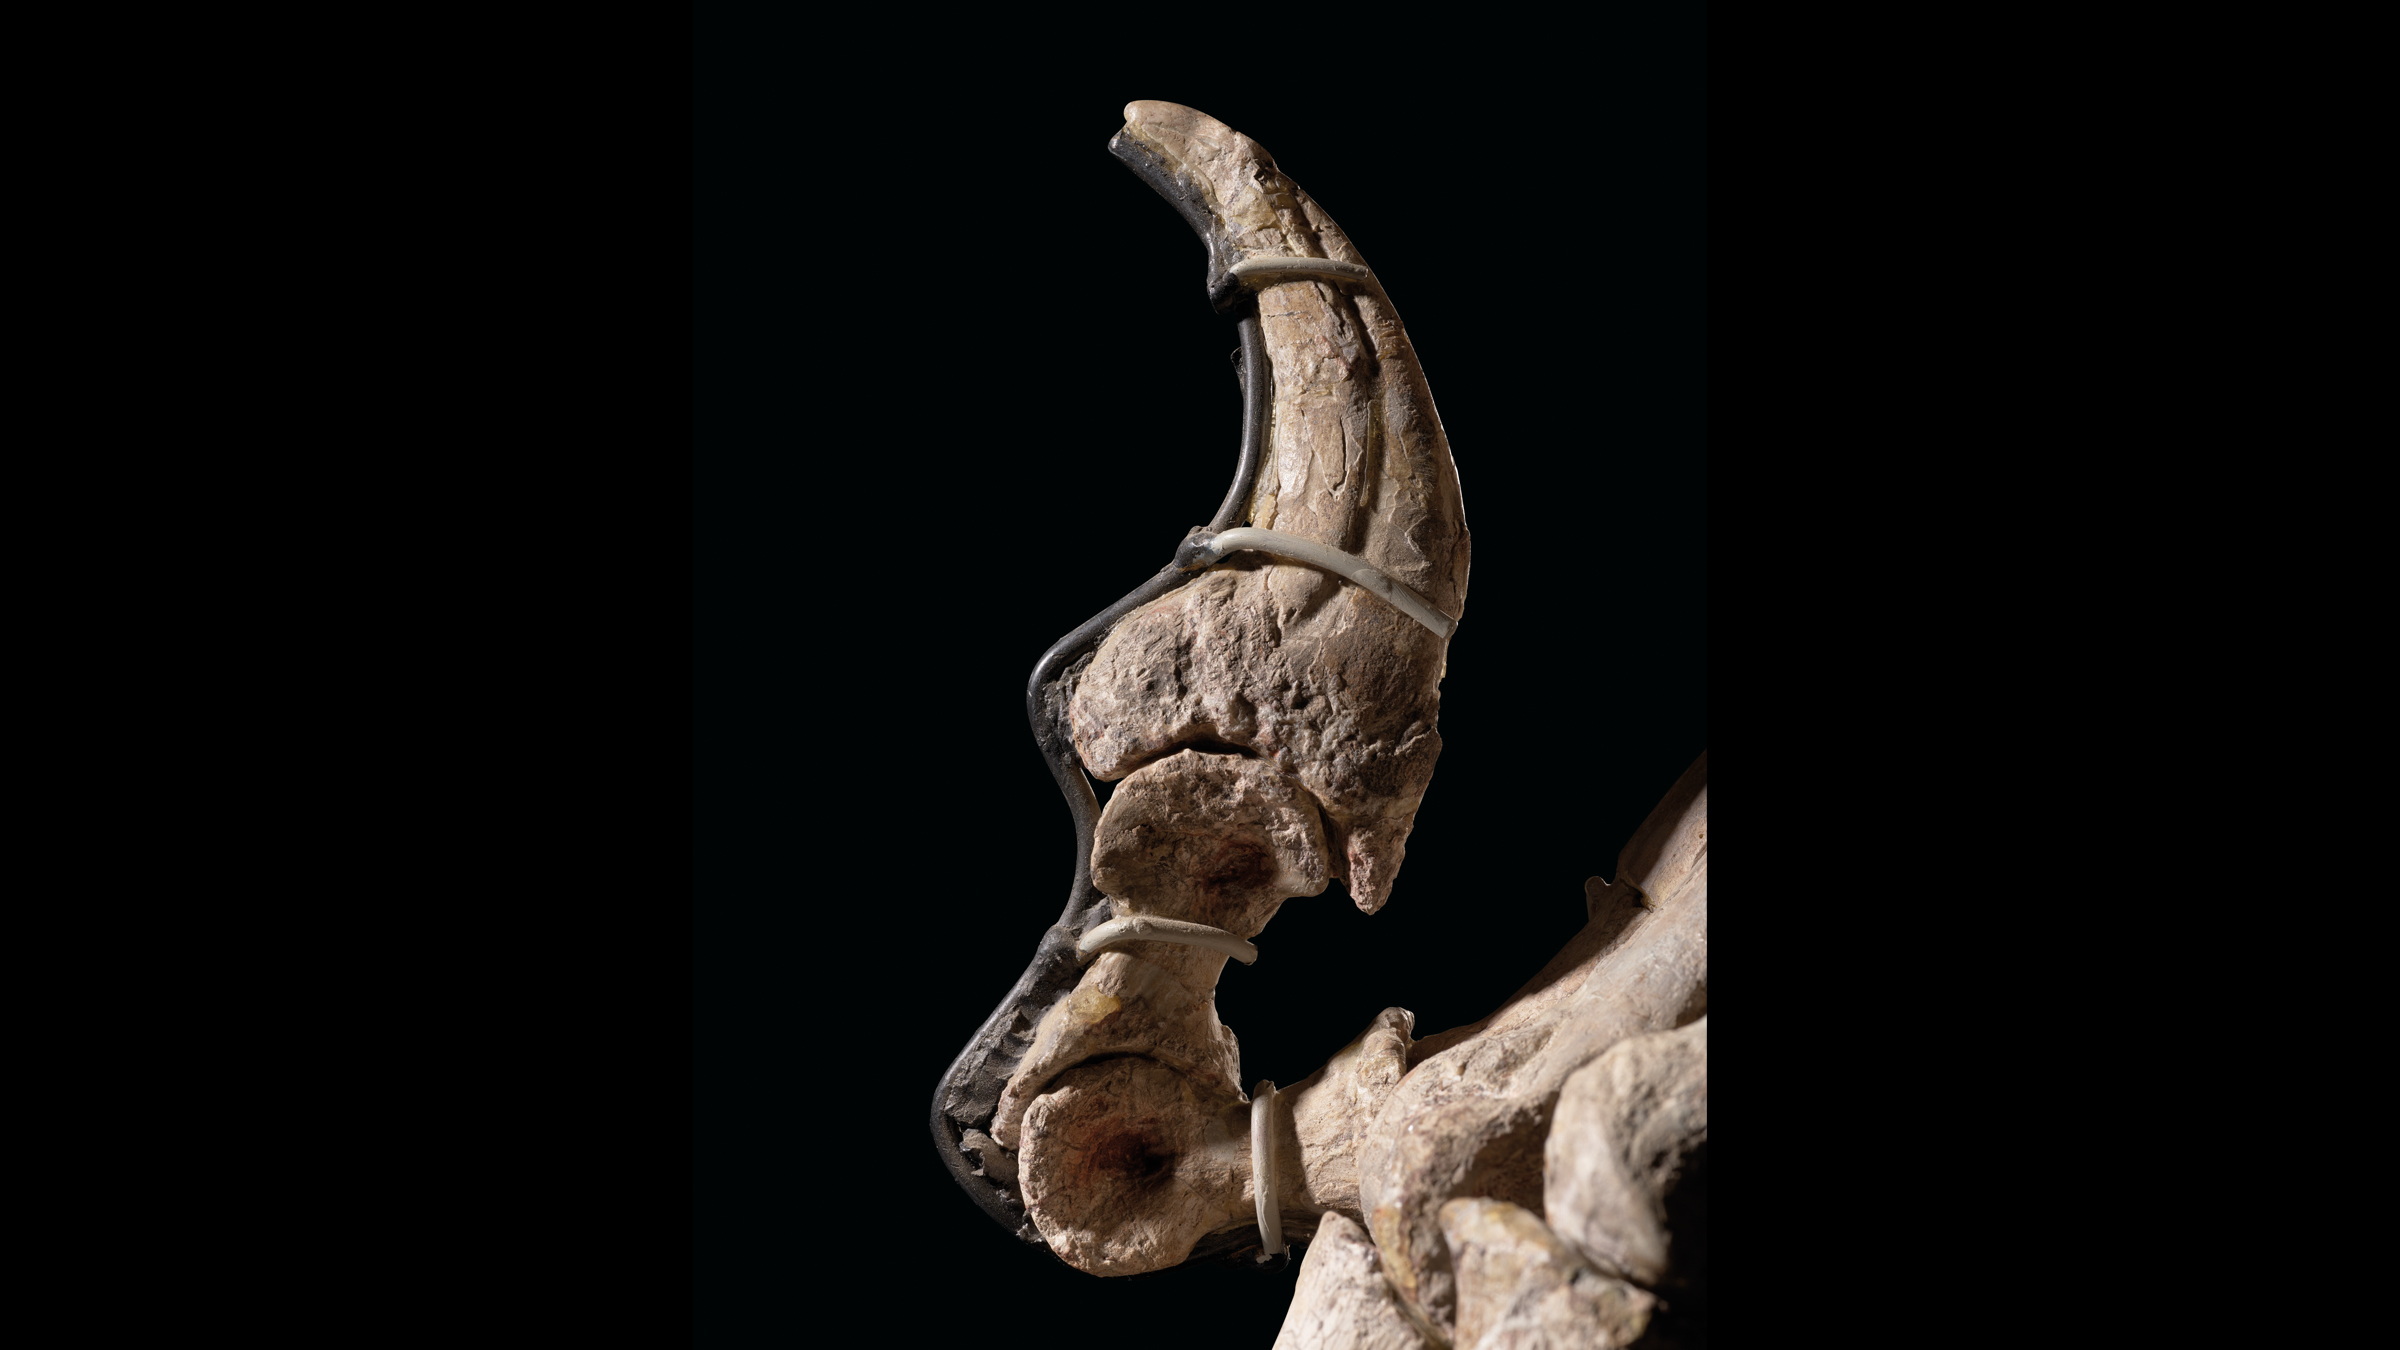 デイノニクスの爪の写真。  Deinonychusは、獲物を解体するために長い爪を使用した可能性があります。